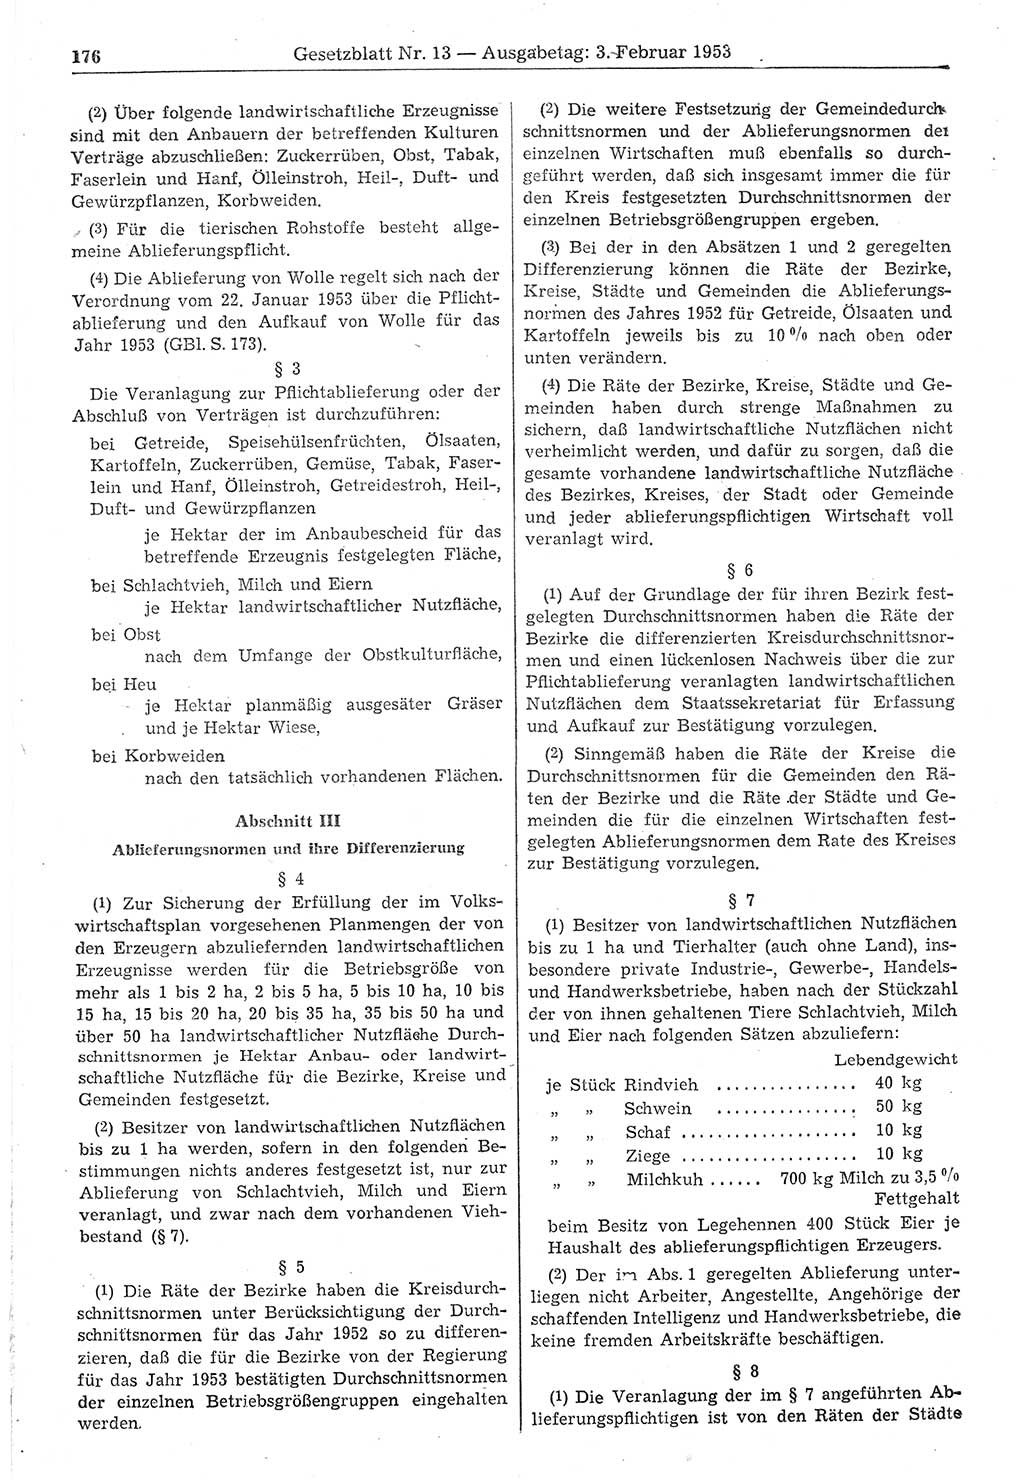 Gesetzblatt (GBl.) der Deutschen Demokratischen Republik (DDR) 1953, Seite 176 (GBl. DDR 1953, S. 176)